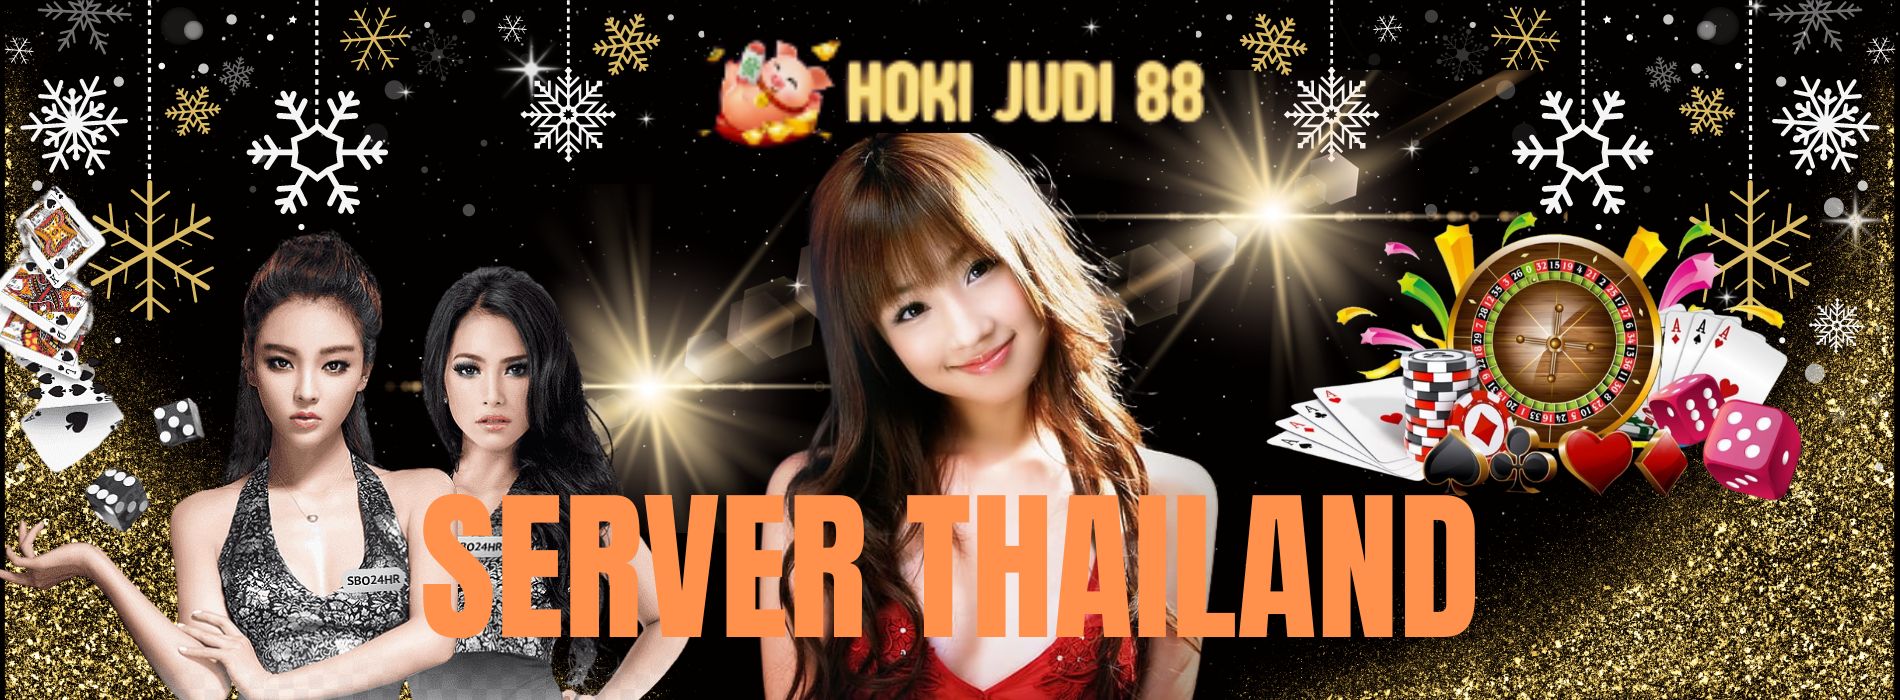 hoki88 server thailand